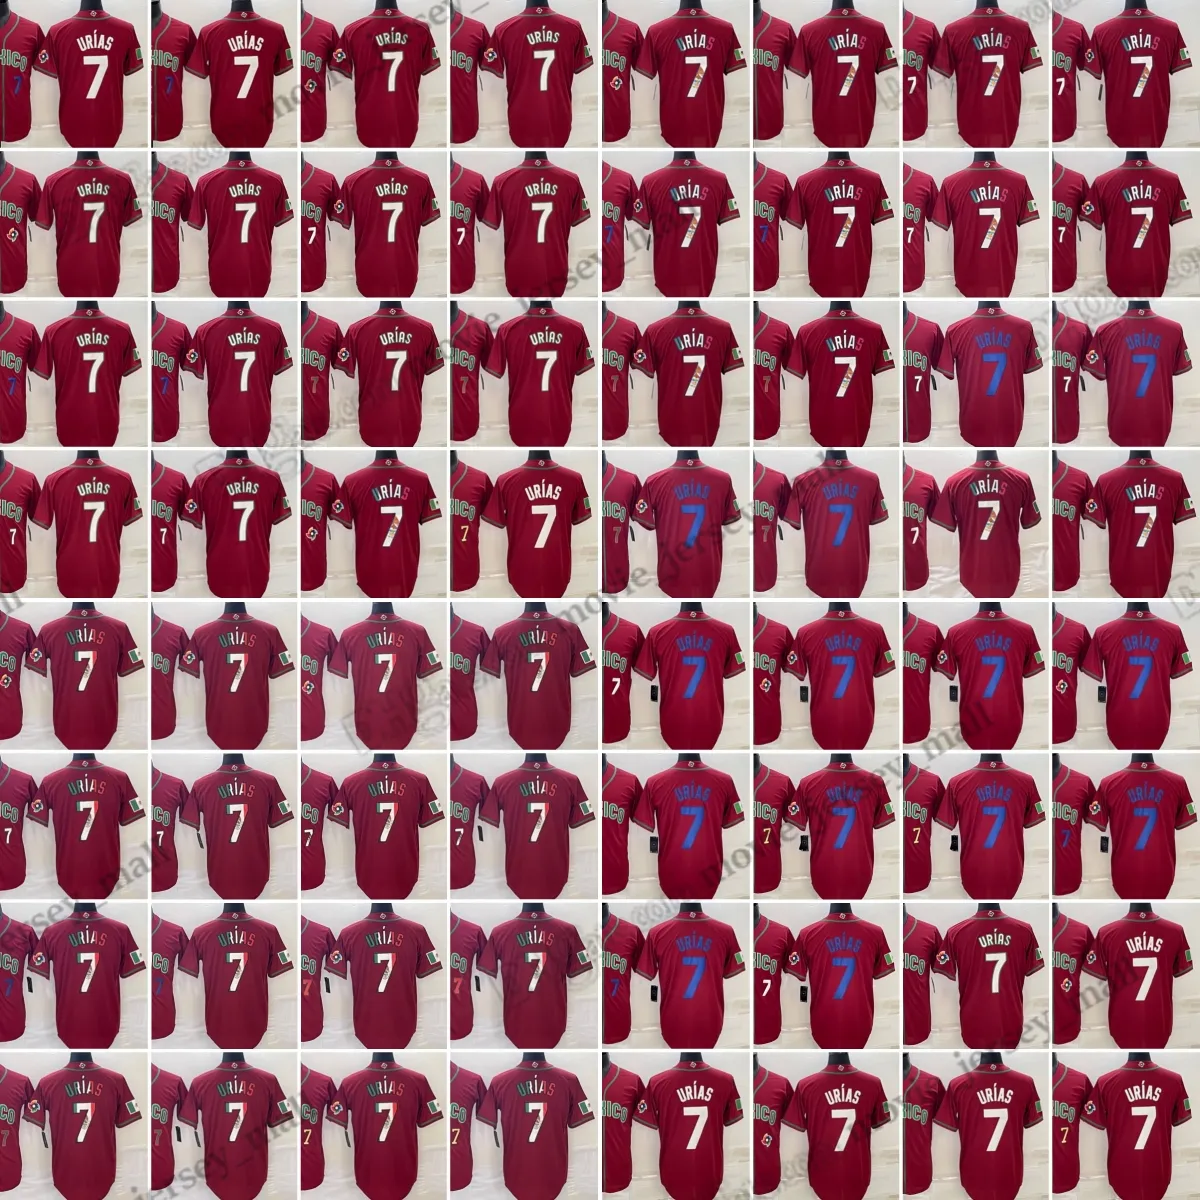 7 Julio Urias 2023 Maglie da baseball Coppa del mondo Abbinamento colori Camicie cucite rosse Taglia uomo S - XXXL